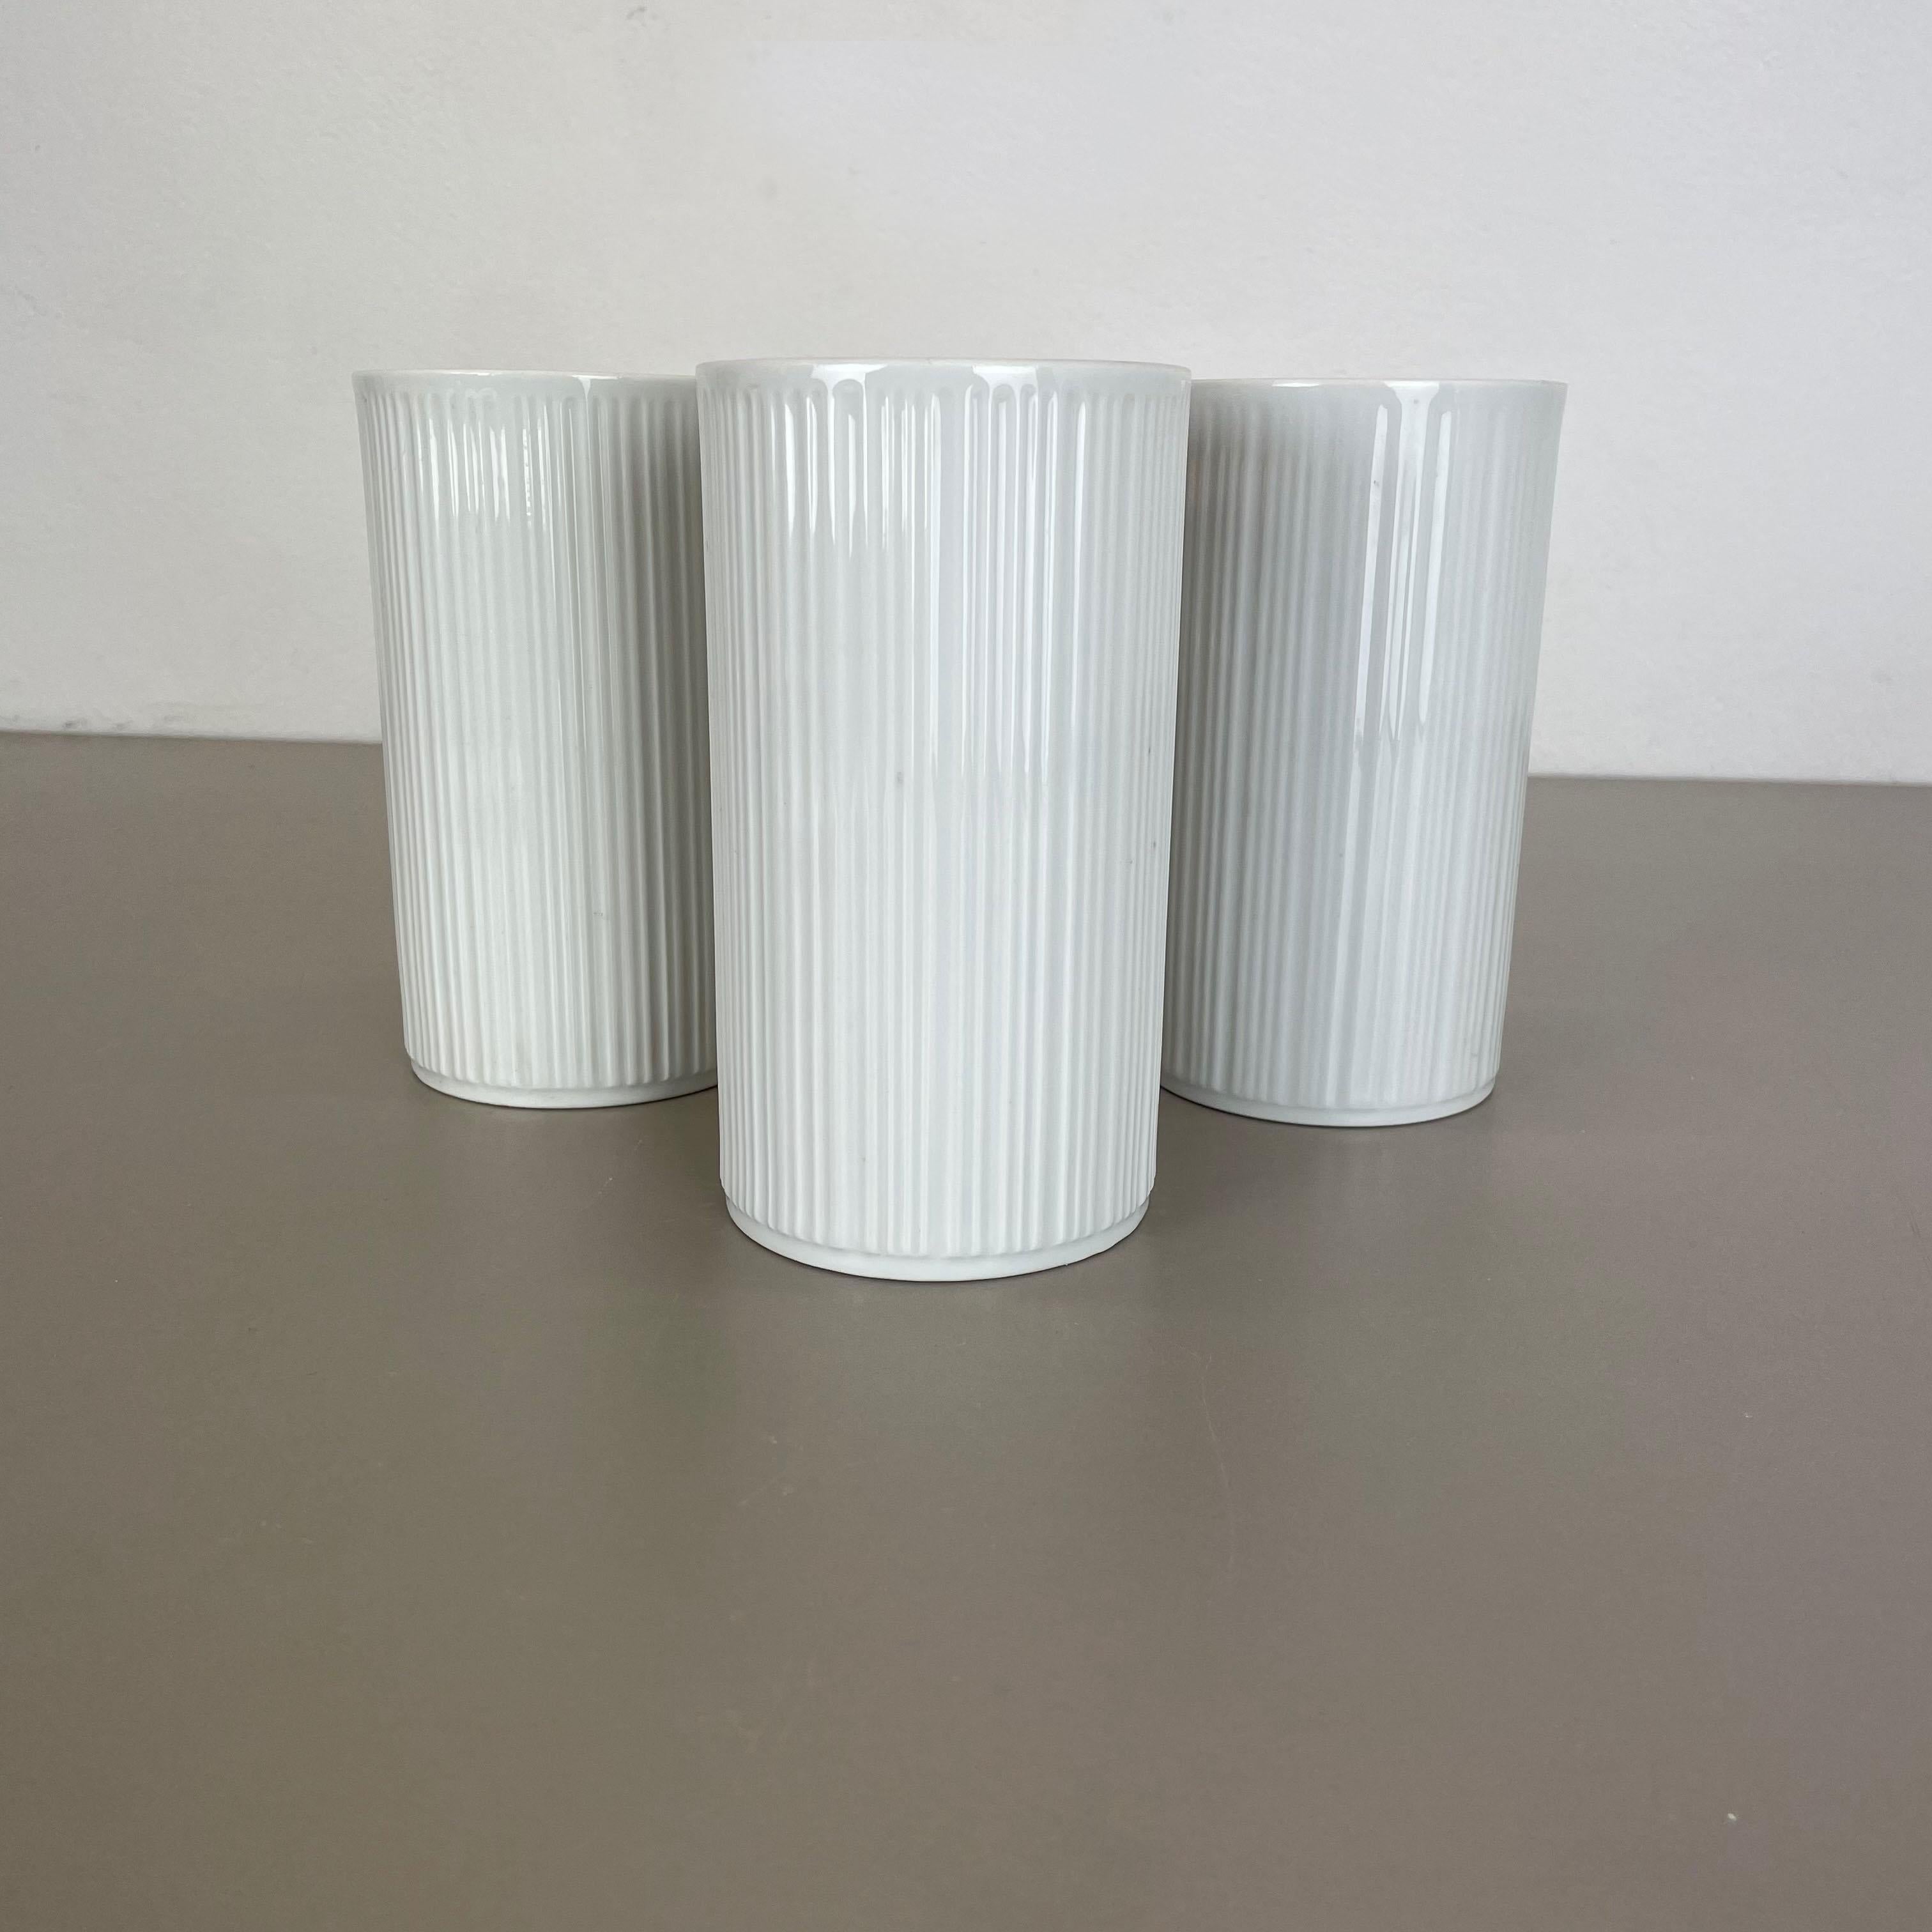 Set of 3 OP Art Porcelain Vases by Melitta Minden, Germany, 1970s For Sale 6